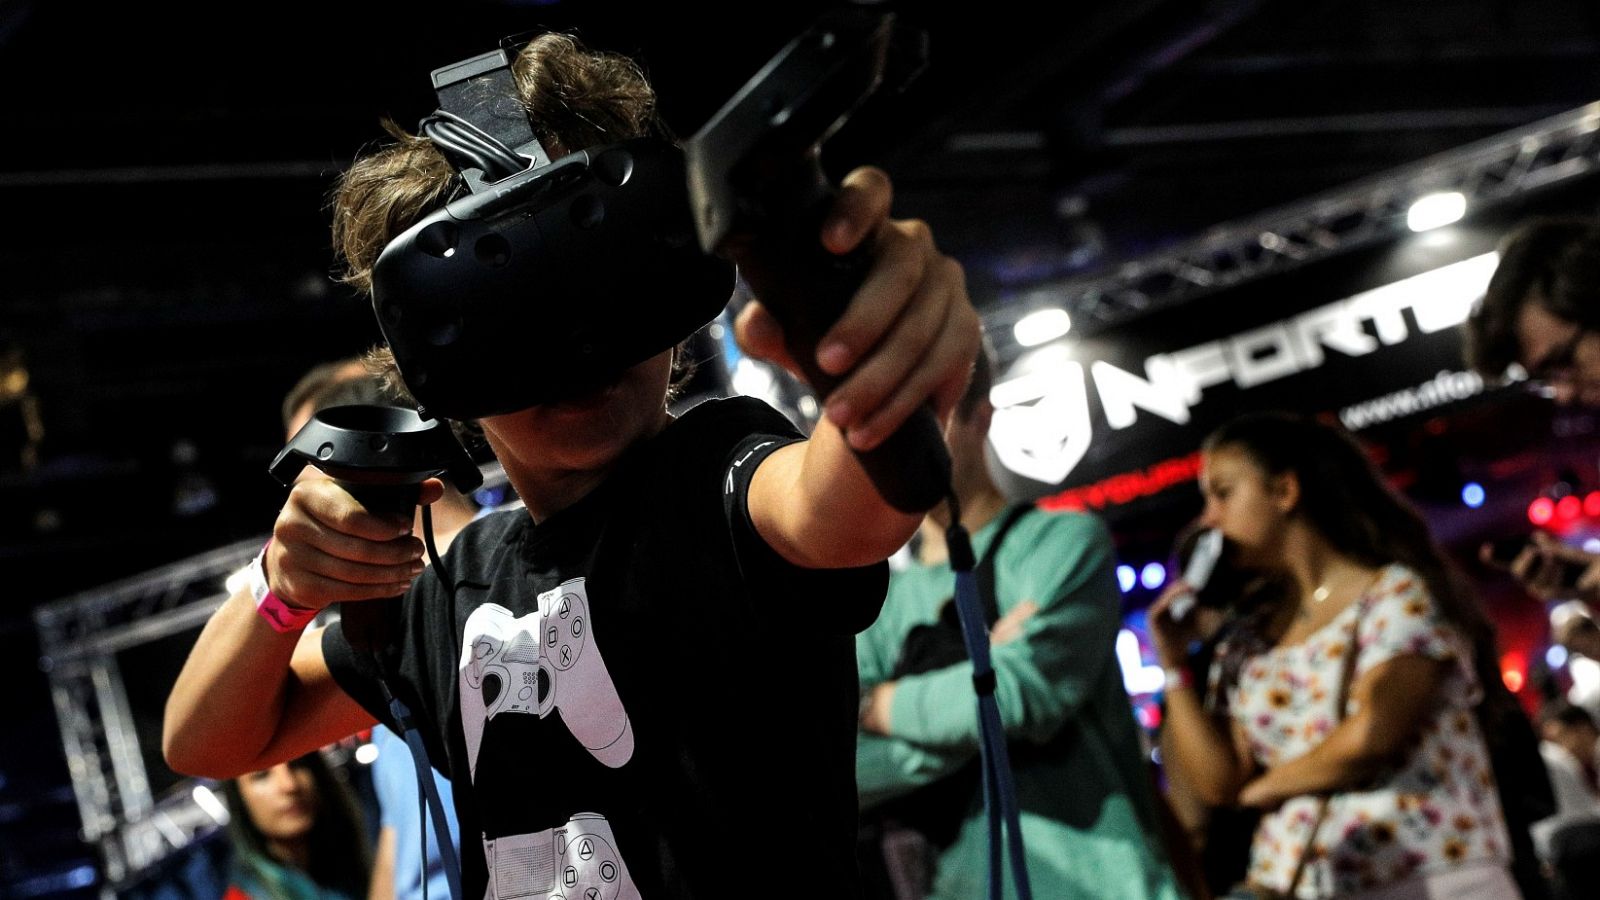 Un niño juega a un videojuego de realidad virtual en el festival DreamHack, en Valencia (2019)